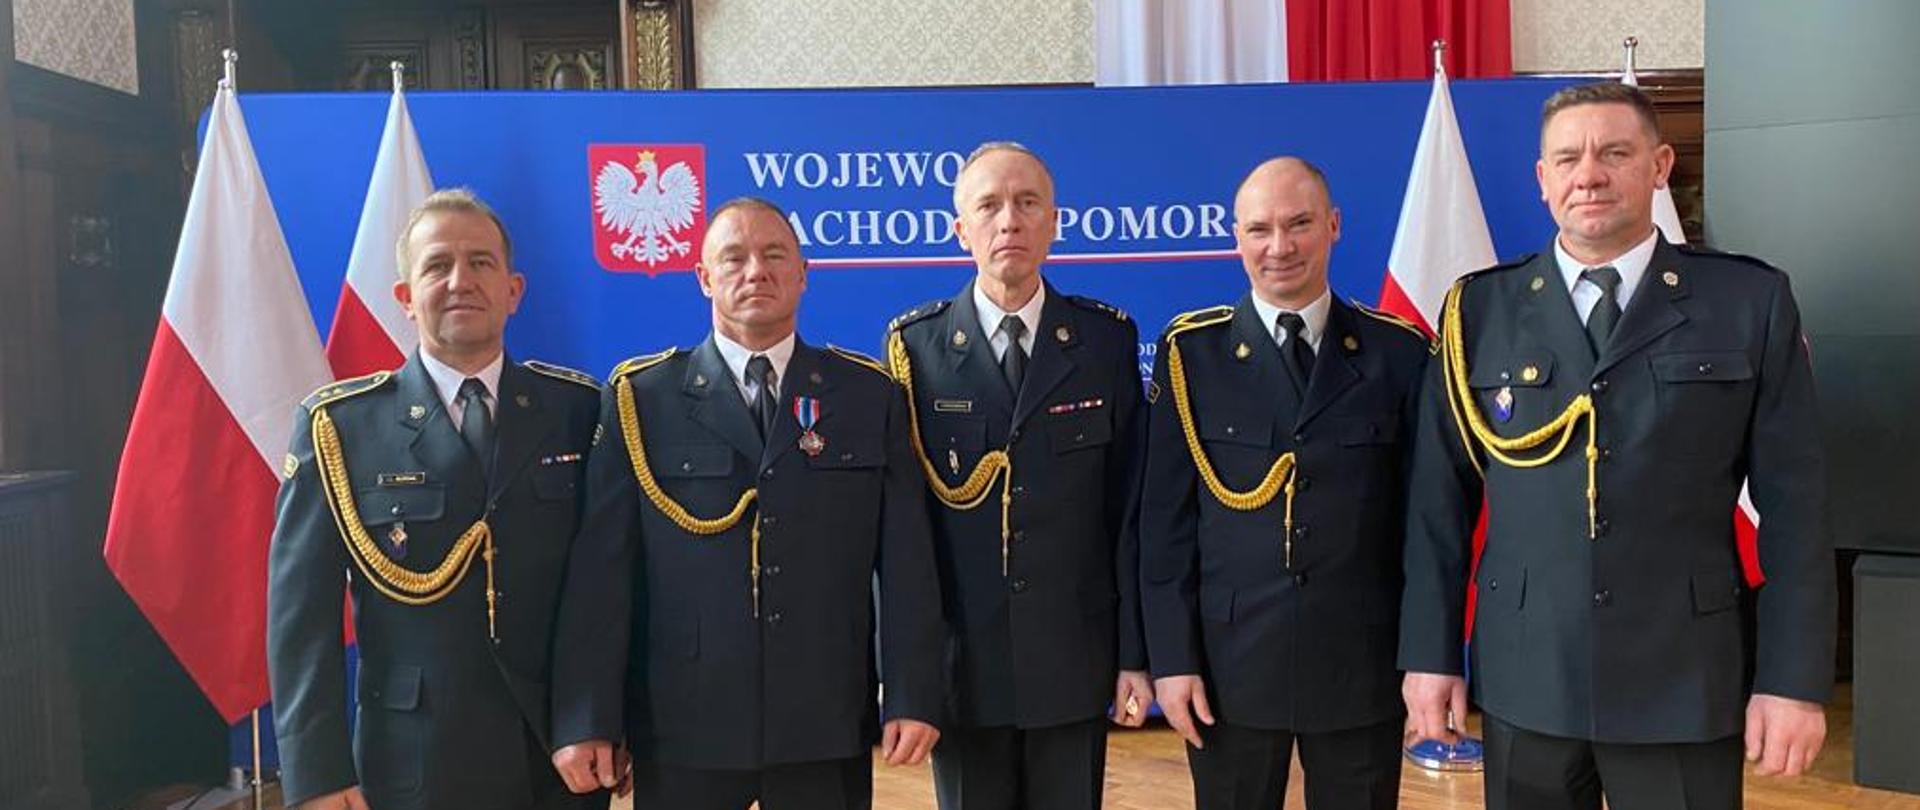 Zdjęcie przedstawia 5 mężczyzn ubranych w mundury wyjściowe na Uroczystości wręczenia odznaczeń, wyróżnień dla funkcjonariuszy PSP oraz Korpusu Służby Cywilnej